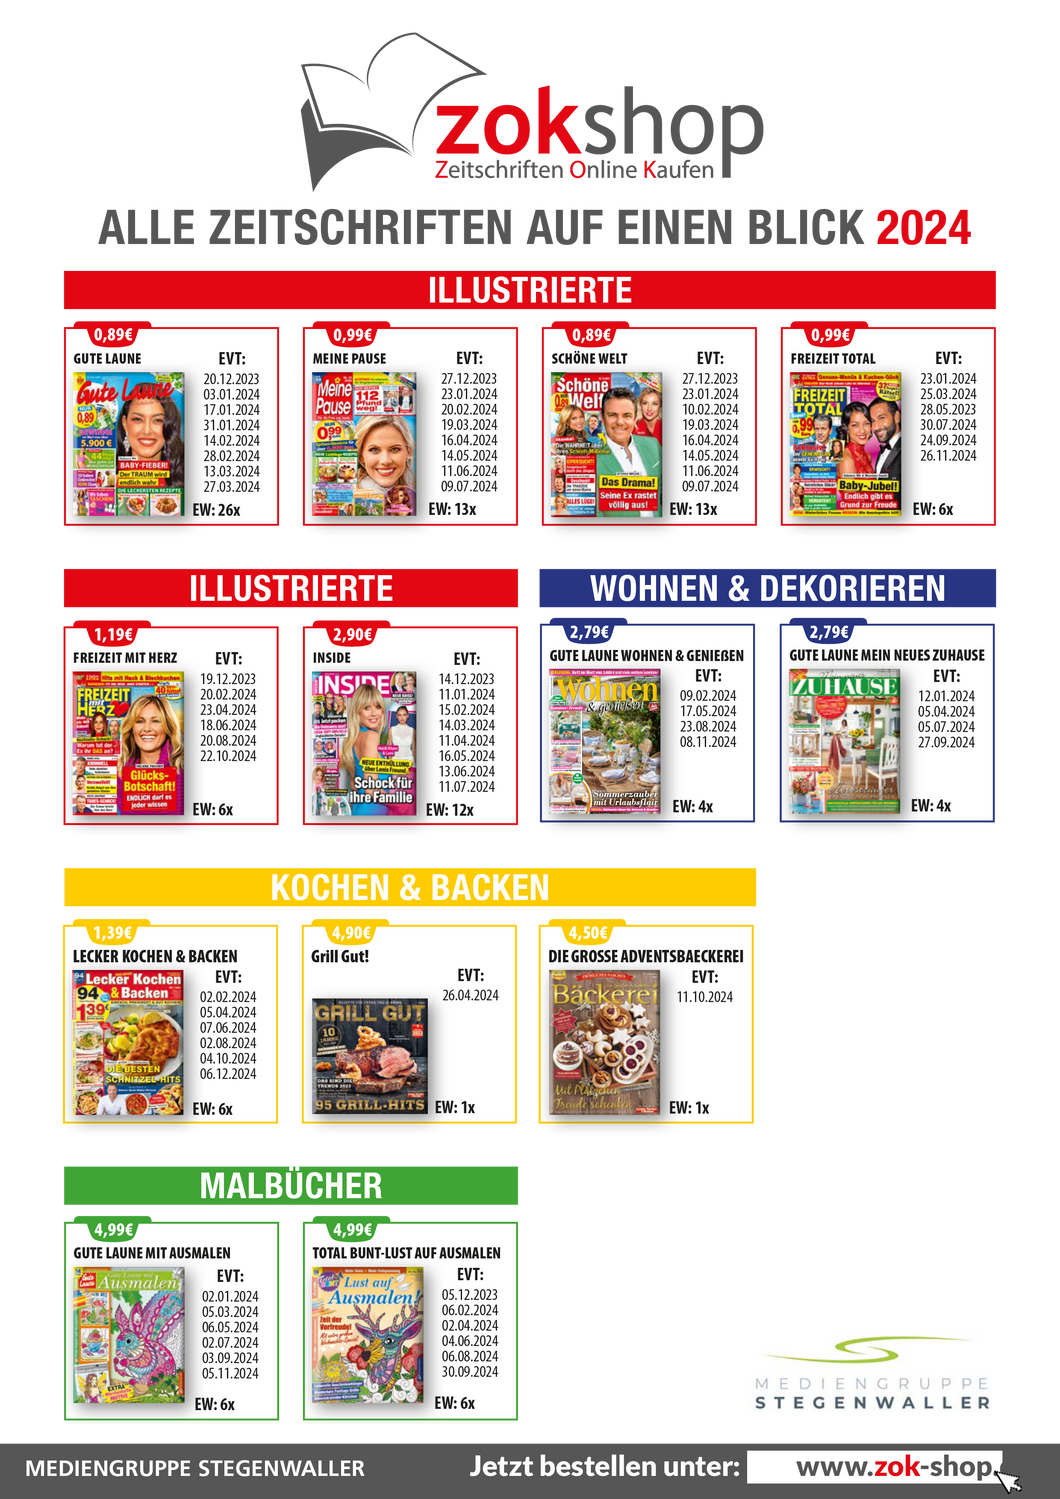 Jahresübersicht Illustrierte, Kochen, Backen, Wohnen und Deko, Malbücher